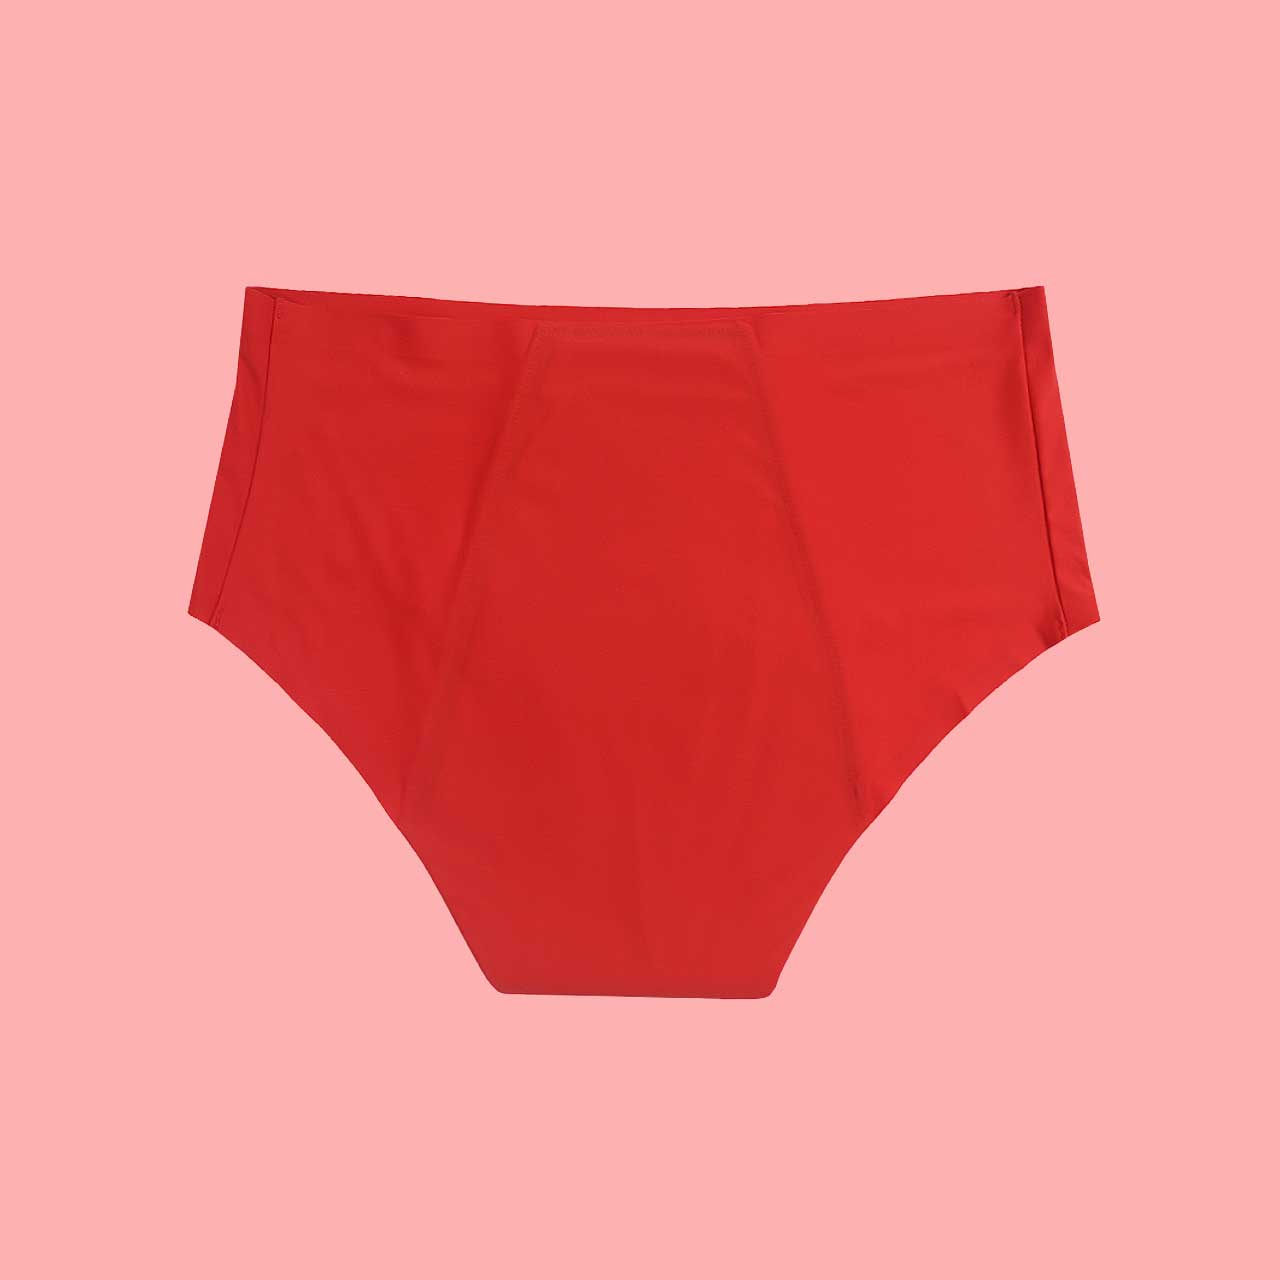 Culotte menstruelle modèle Scarlet rouge taille haute sans couture dos